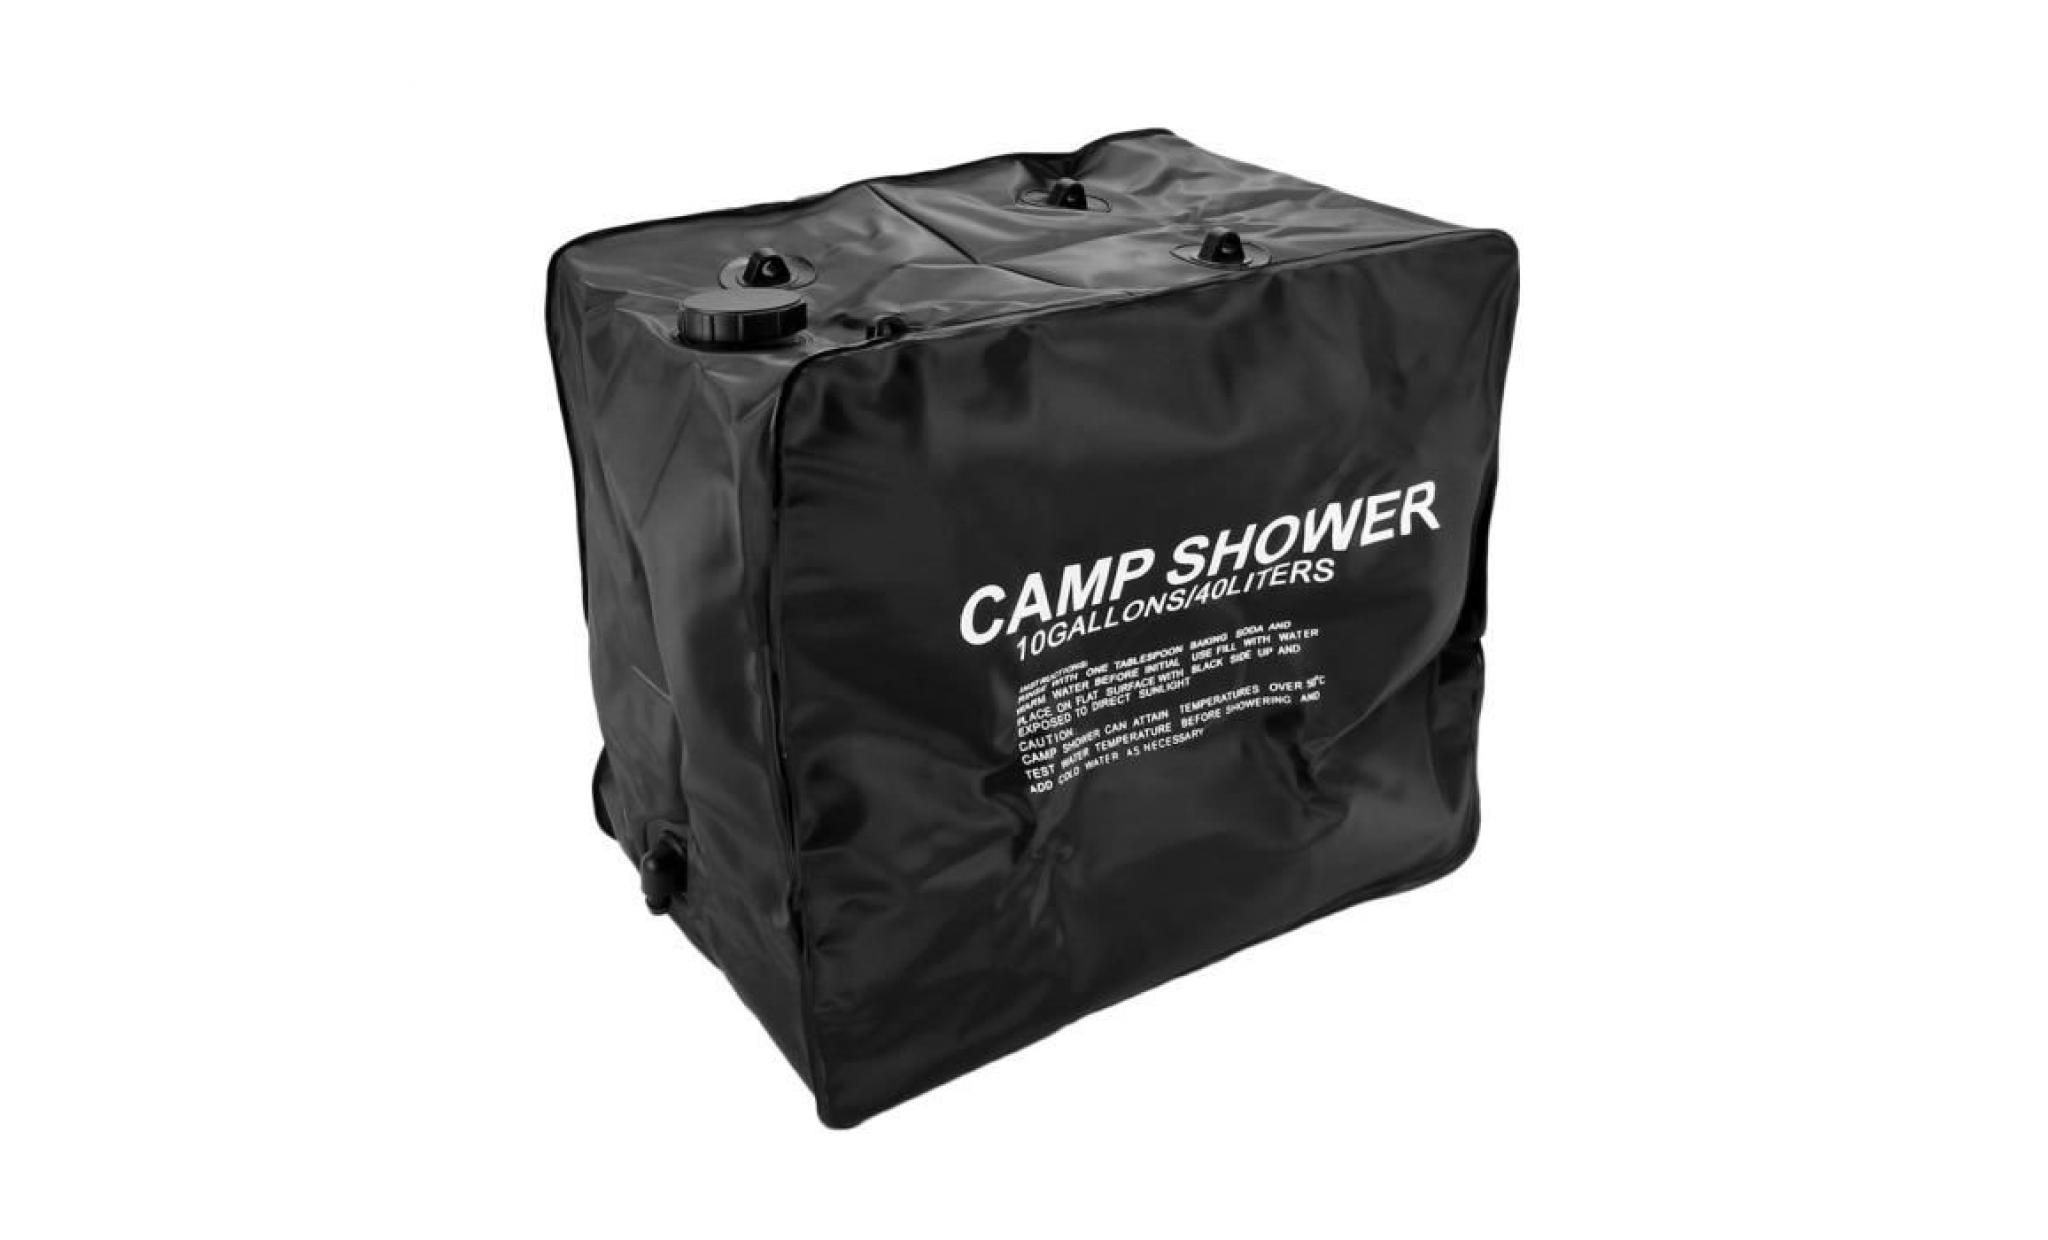 sac de douche solaire 40l 10 gallons outils de camping pas cher